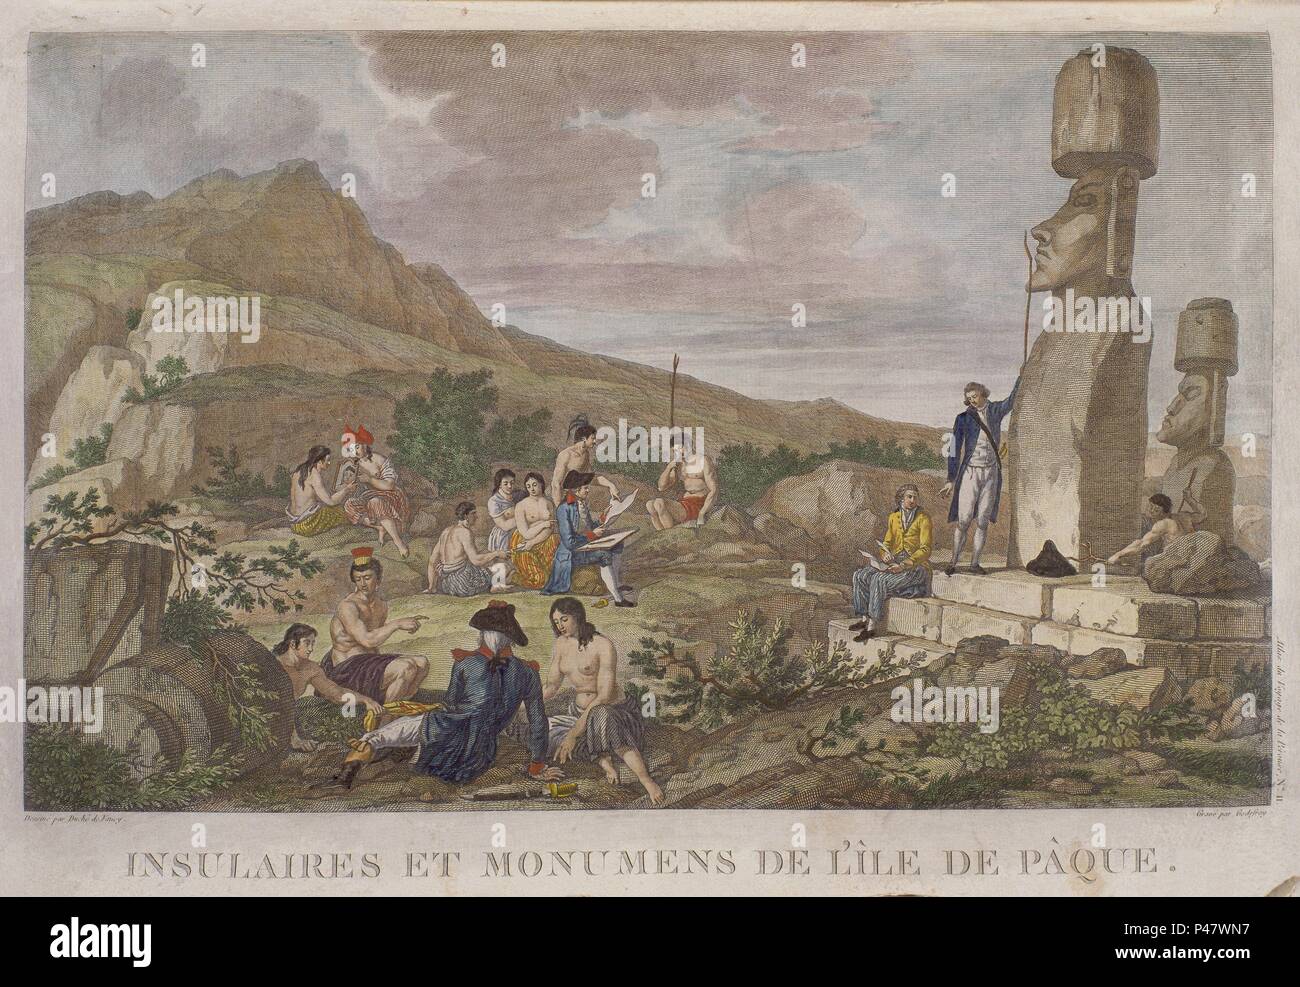 'Islanders and Monuments of Easter Island', plate 11 from the 'Atlas de Voyage de La Perouse' - 1797 - engraving. Author: Gaspard Duché de Vancy (1756-1788). Location: SERVICIO HISTORICO DE LA MARINA, VINCENNES, FRANCE. Also known as: ATLAS DE VIAJE DE LA PEROUSE-ISLEÑOS Y MONUMENTOS DE LA ISLA DE PASCUA. Stock Photo